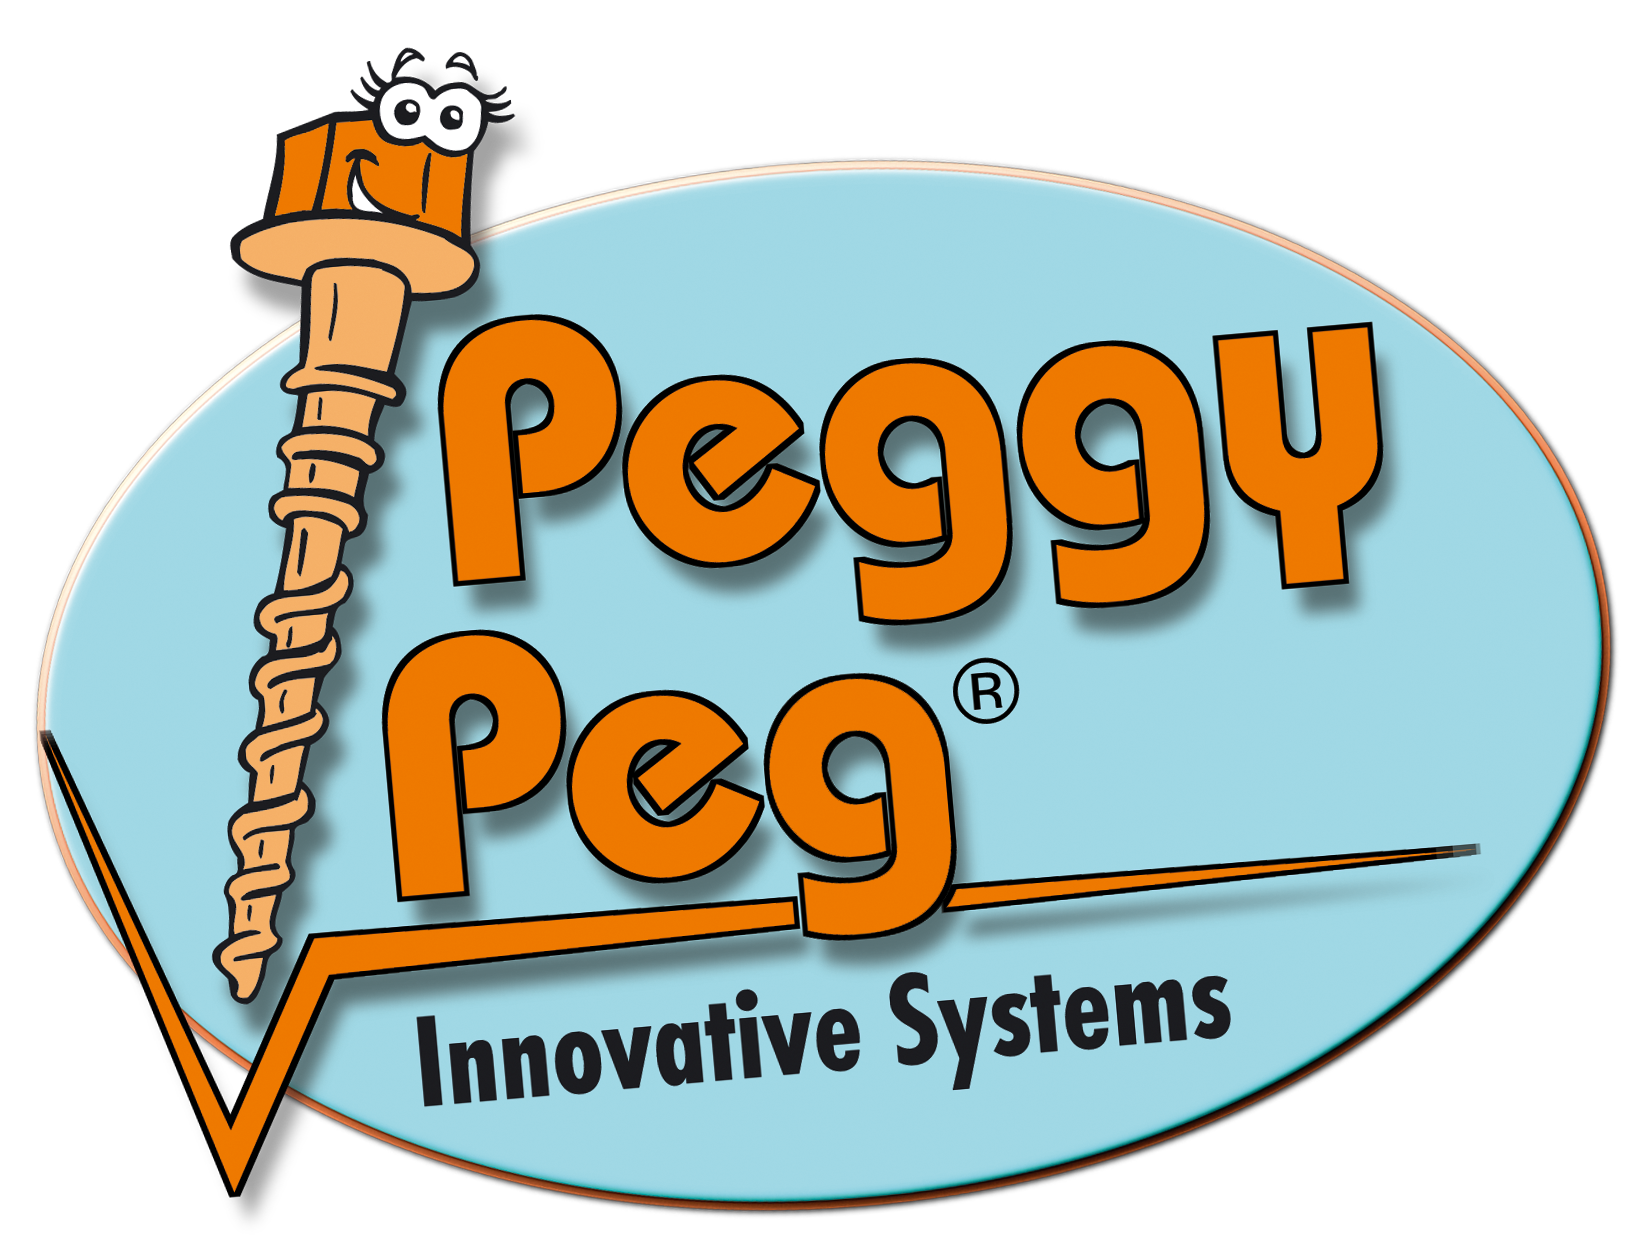 Peggy Peg Shop - Schraubheringe von den Profis